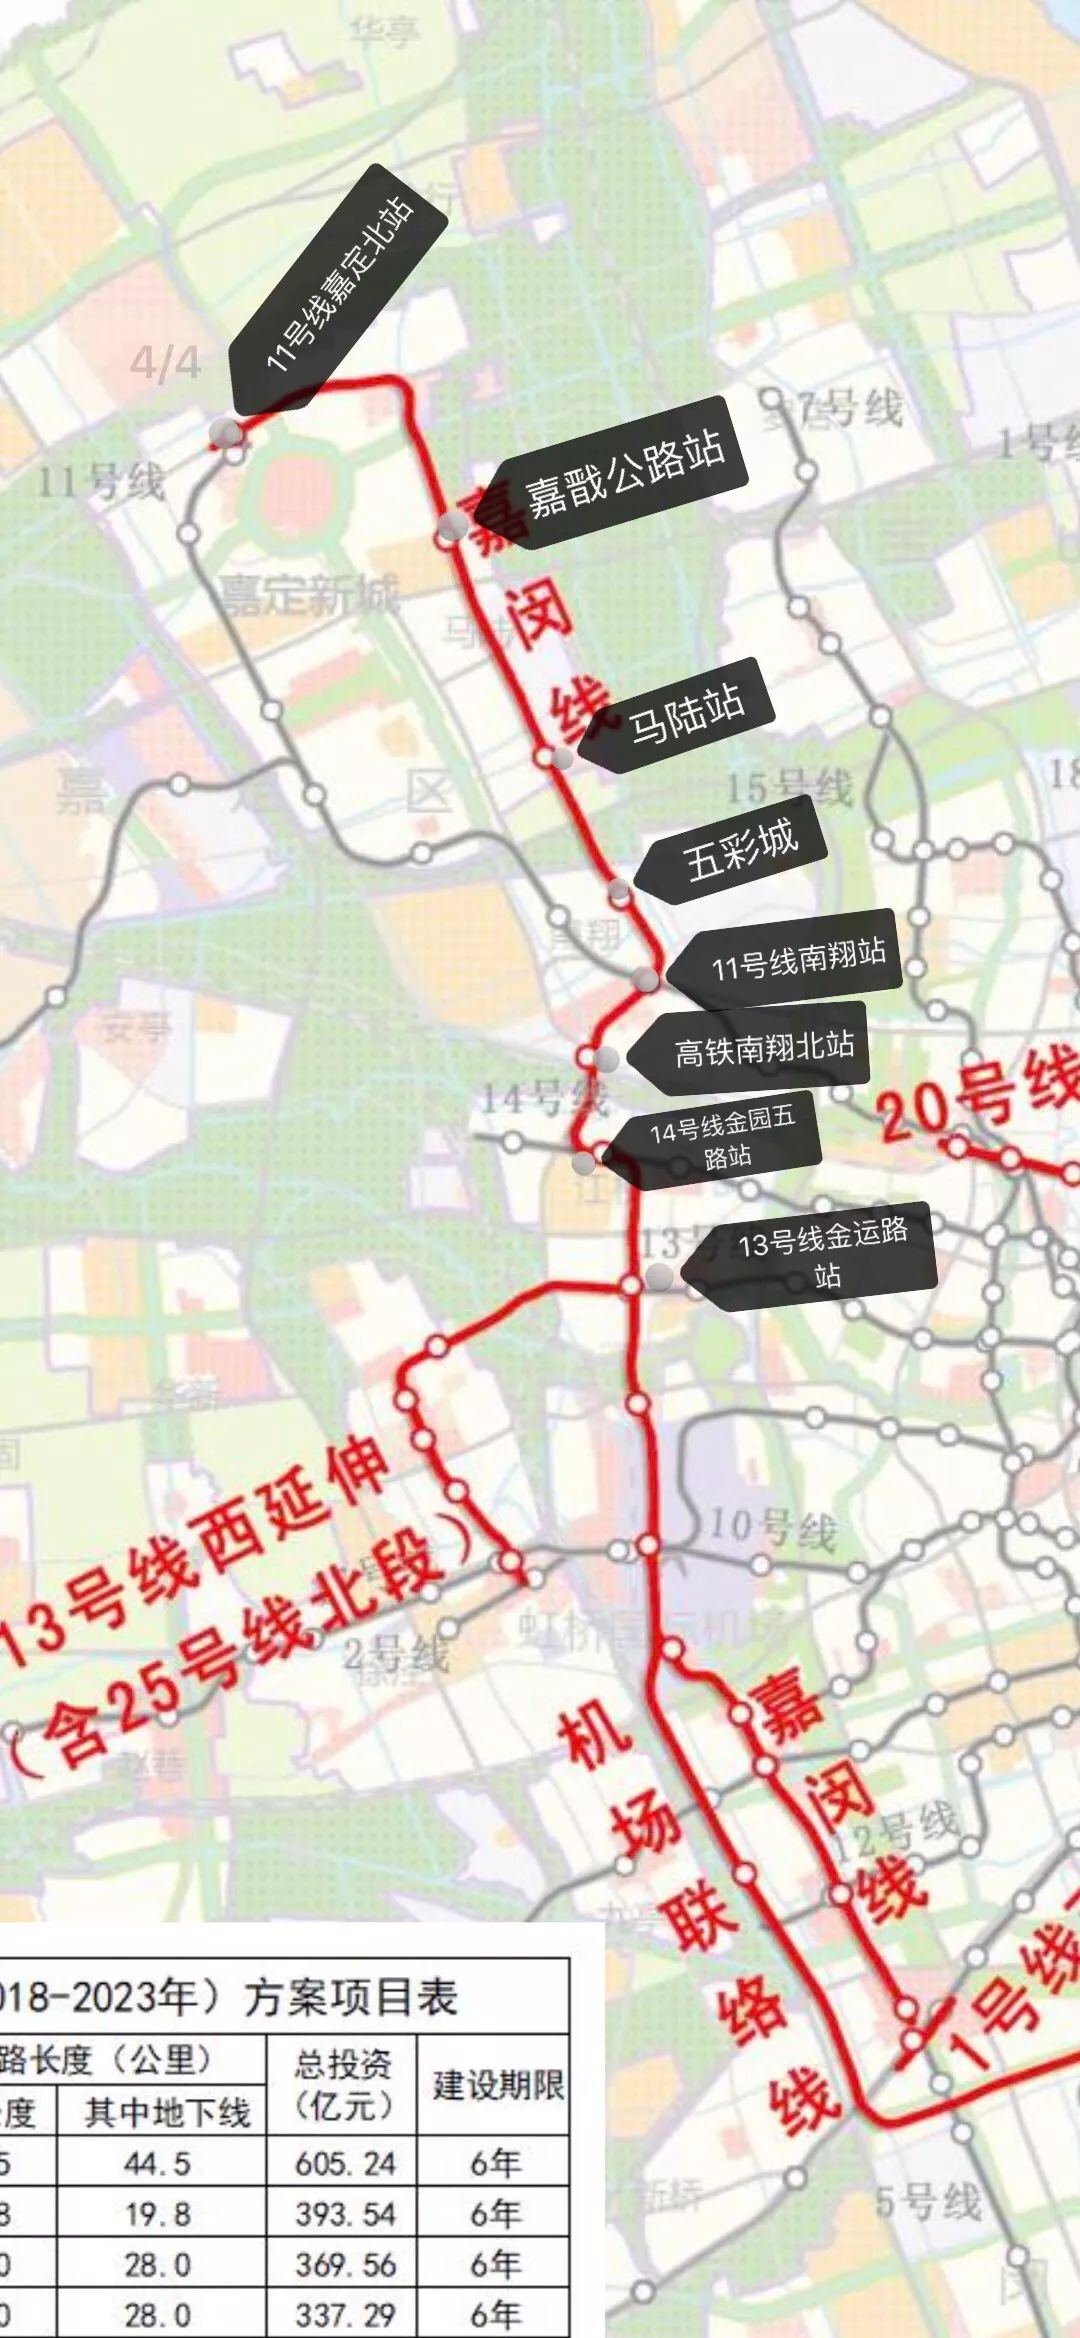 嘉闵线,上海,城市轨道交通分类,上海地铁,联络线,嘉定